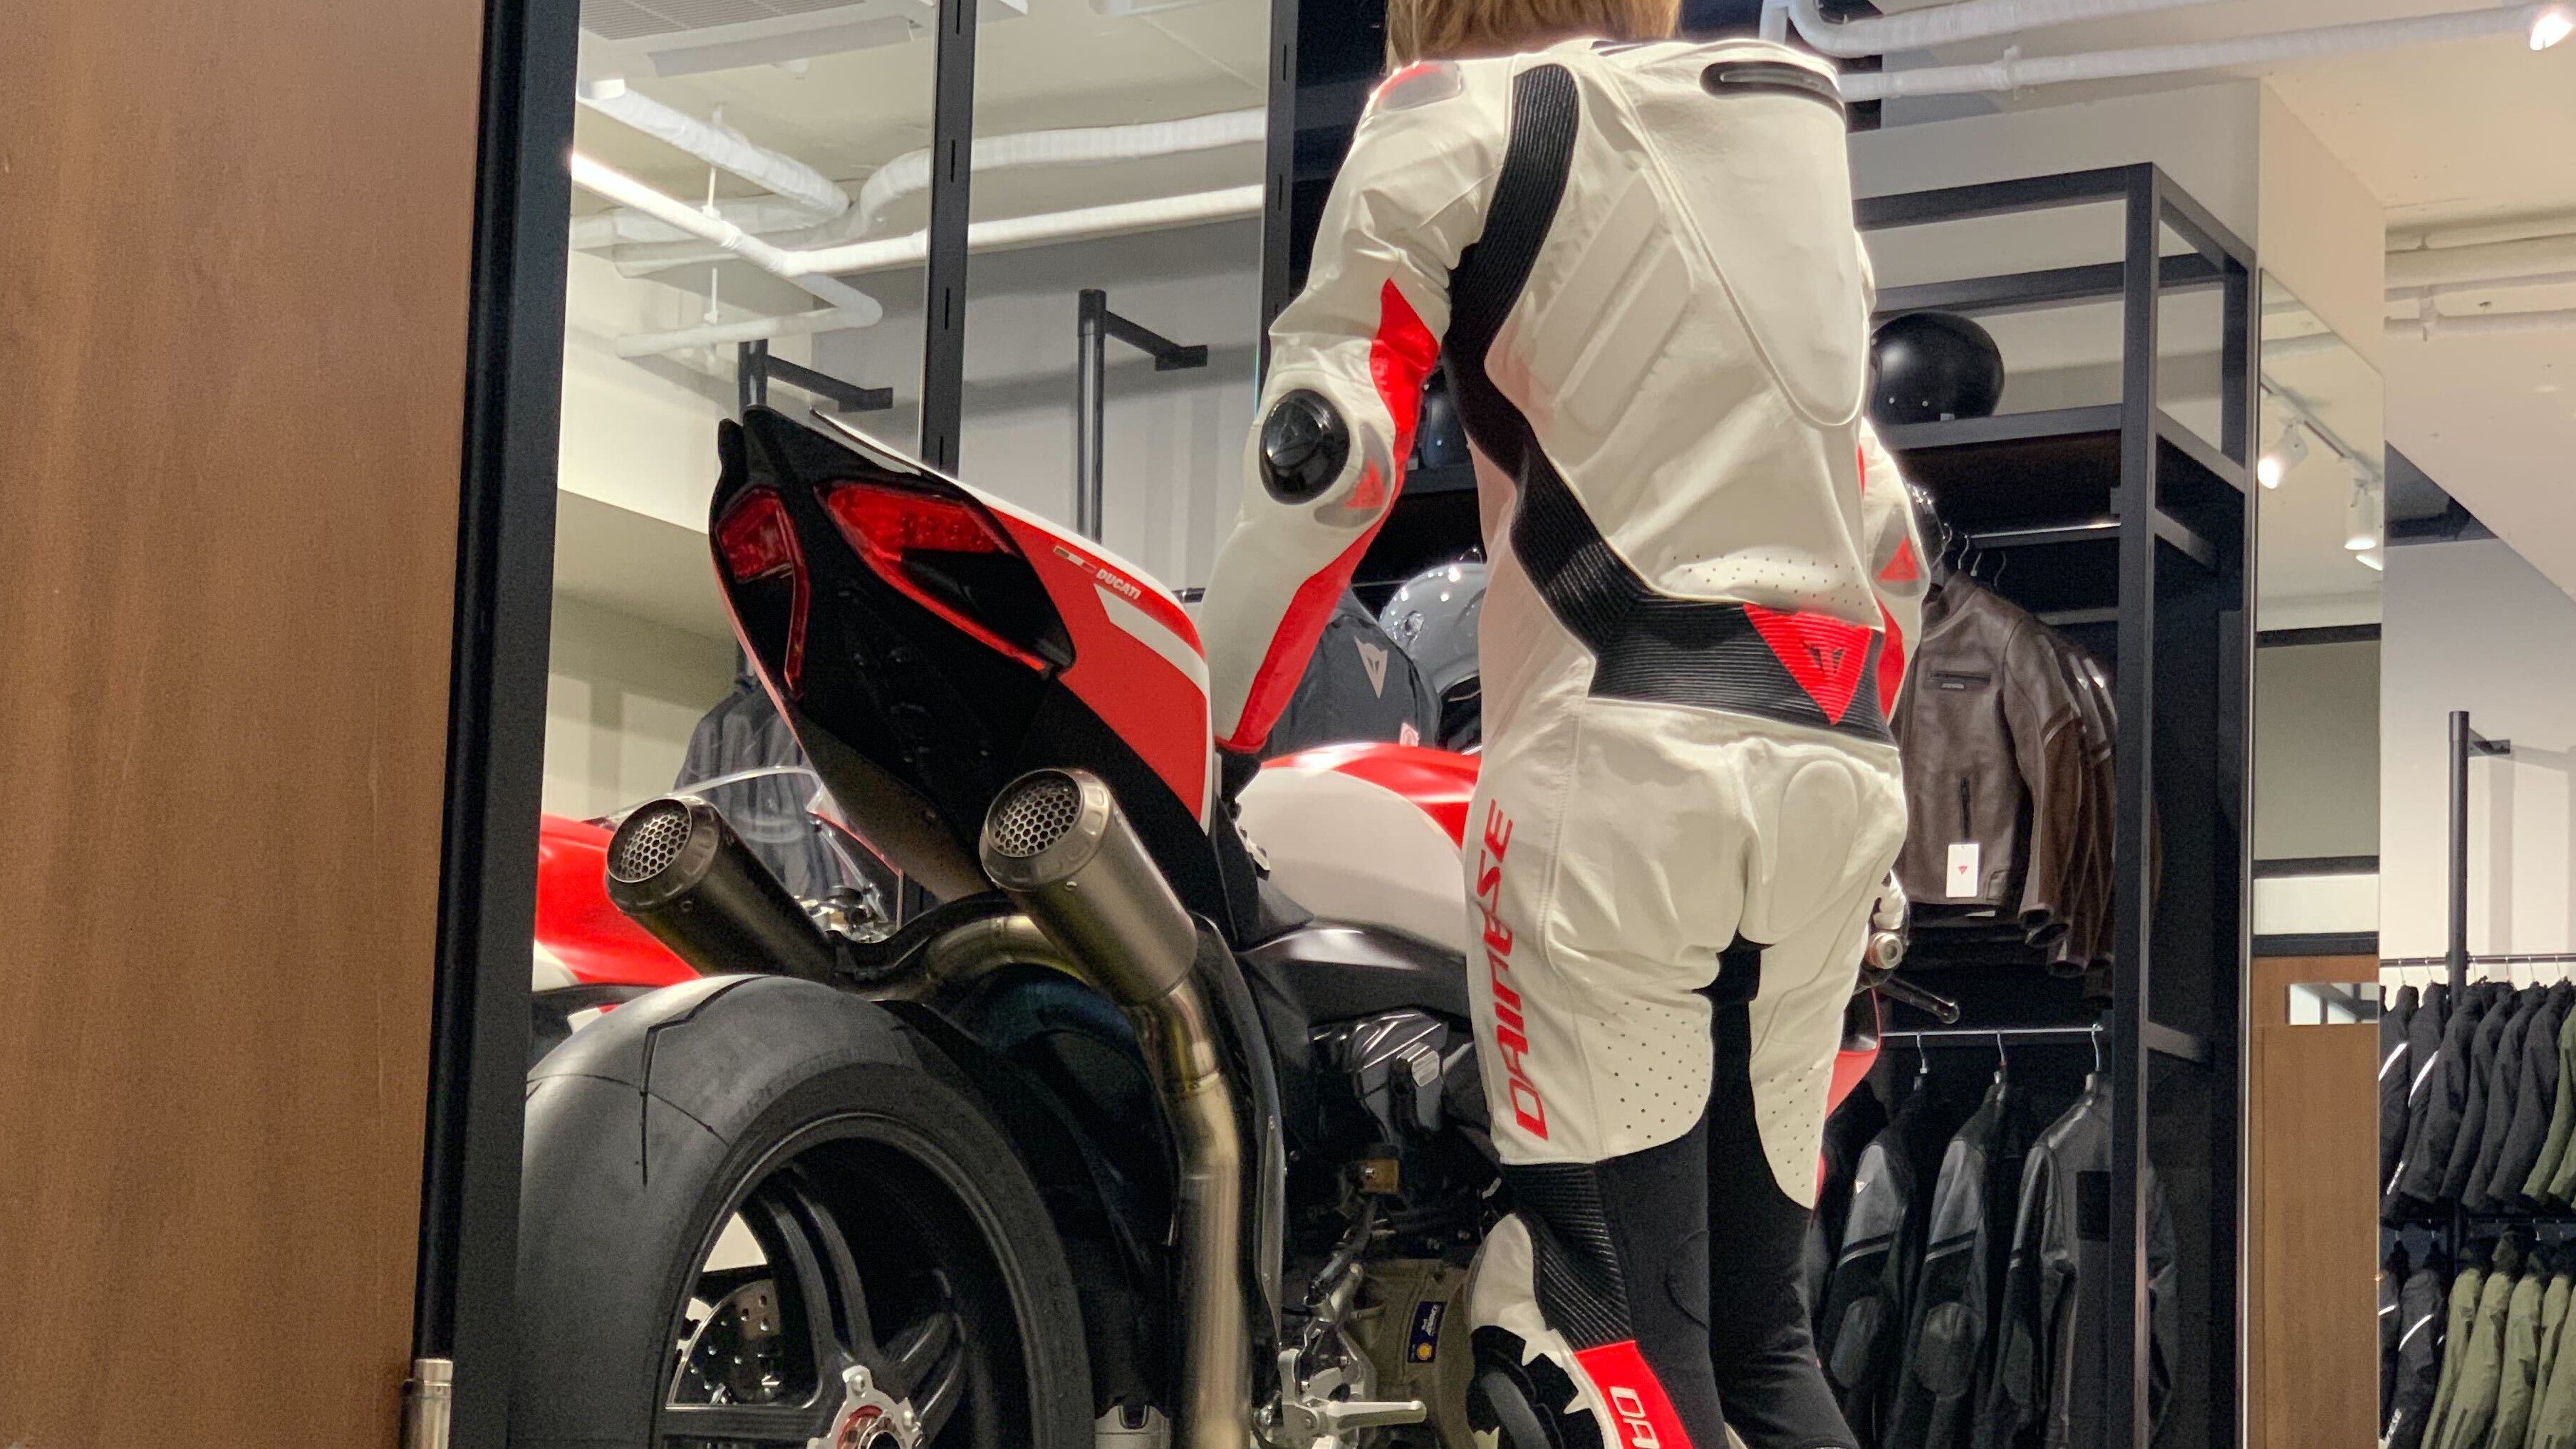 MotoGPライダーも使用する究極のレーシングスーツ